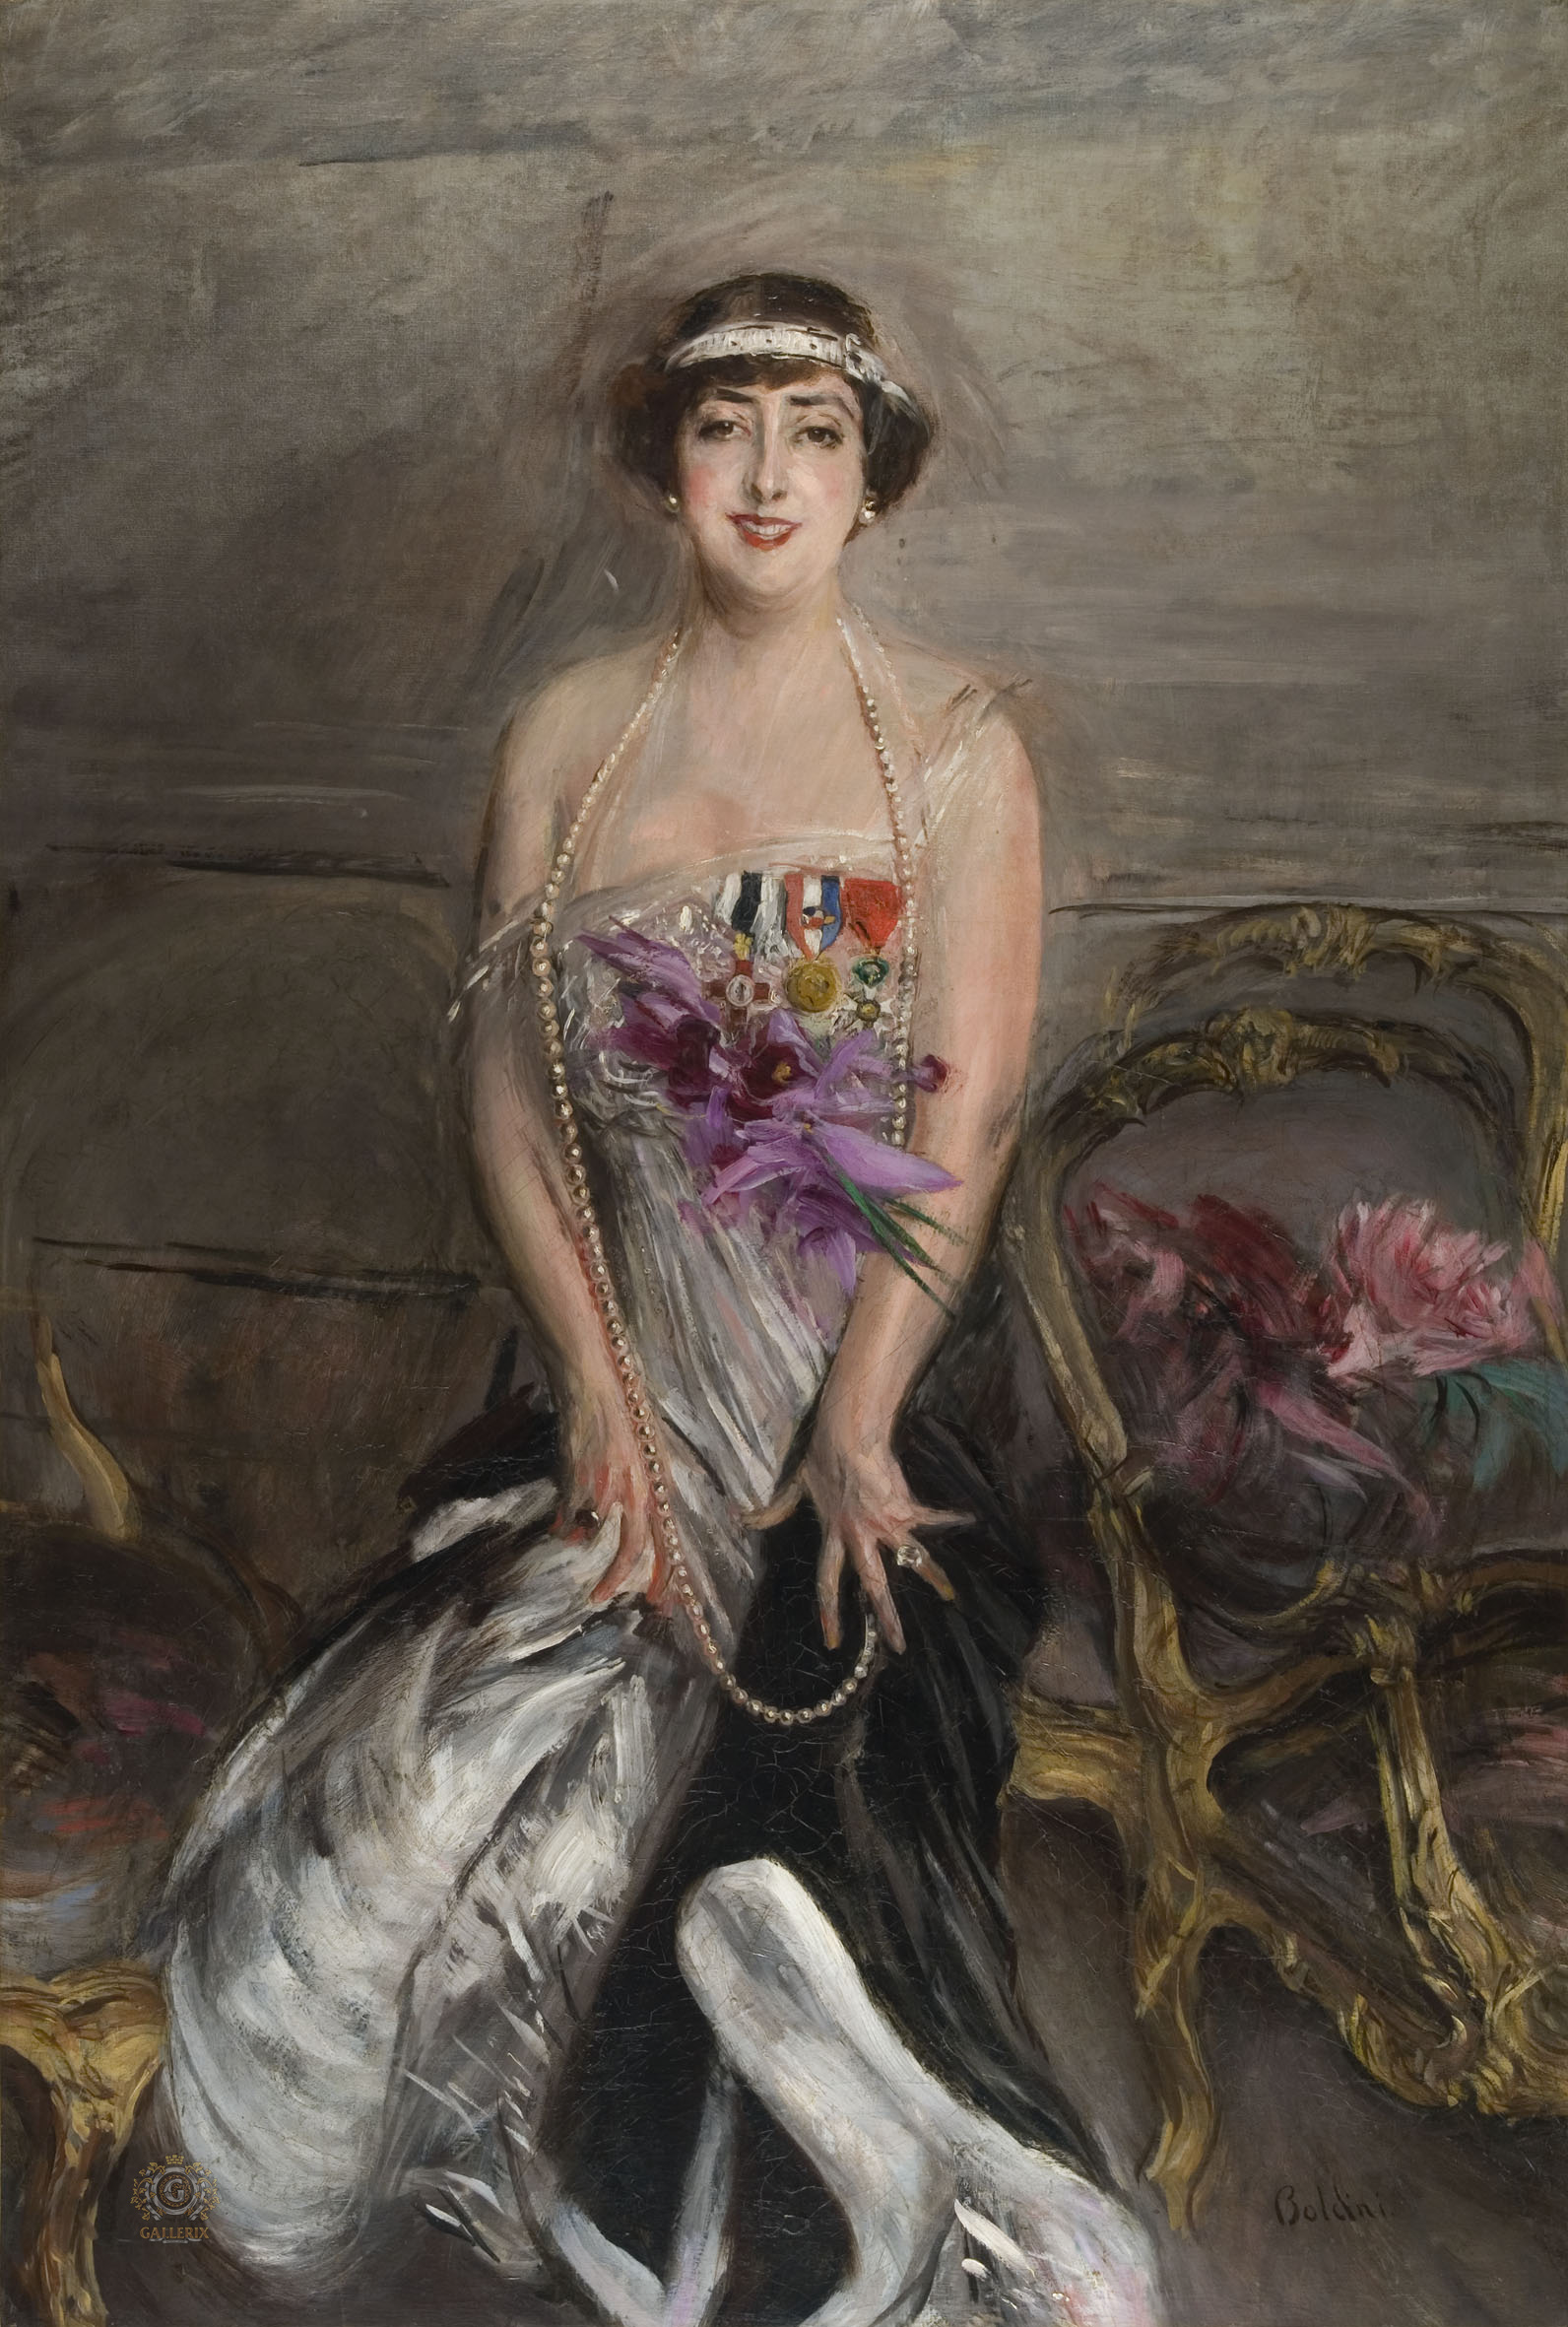 Джованни Больдини. "Мадам Мишелам". 1913.